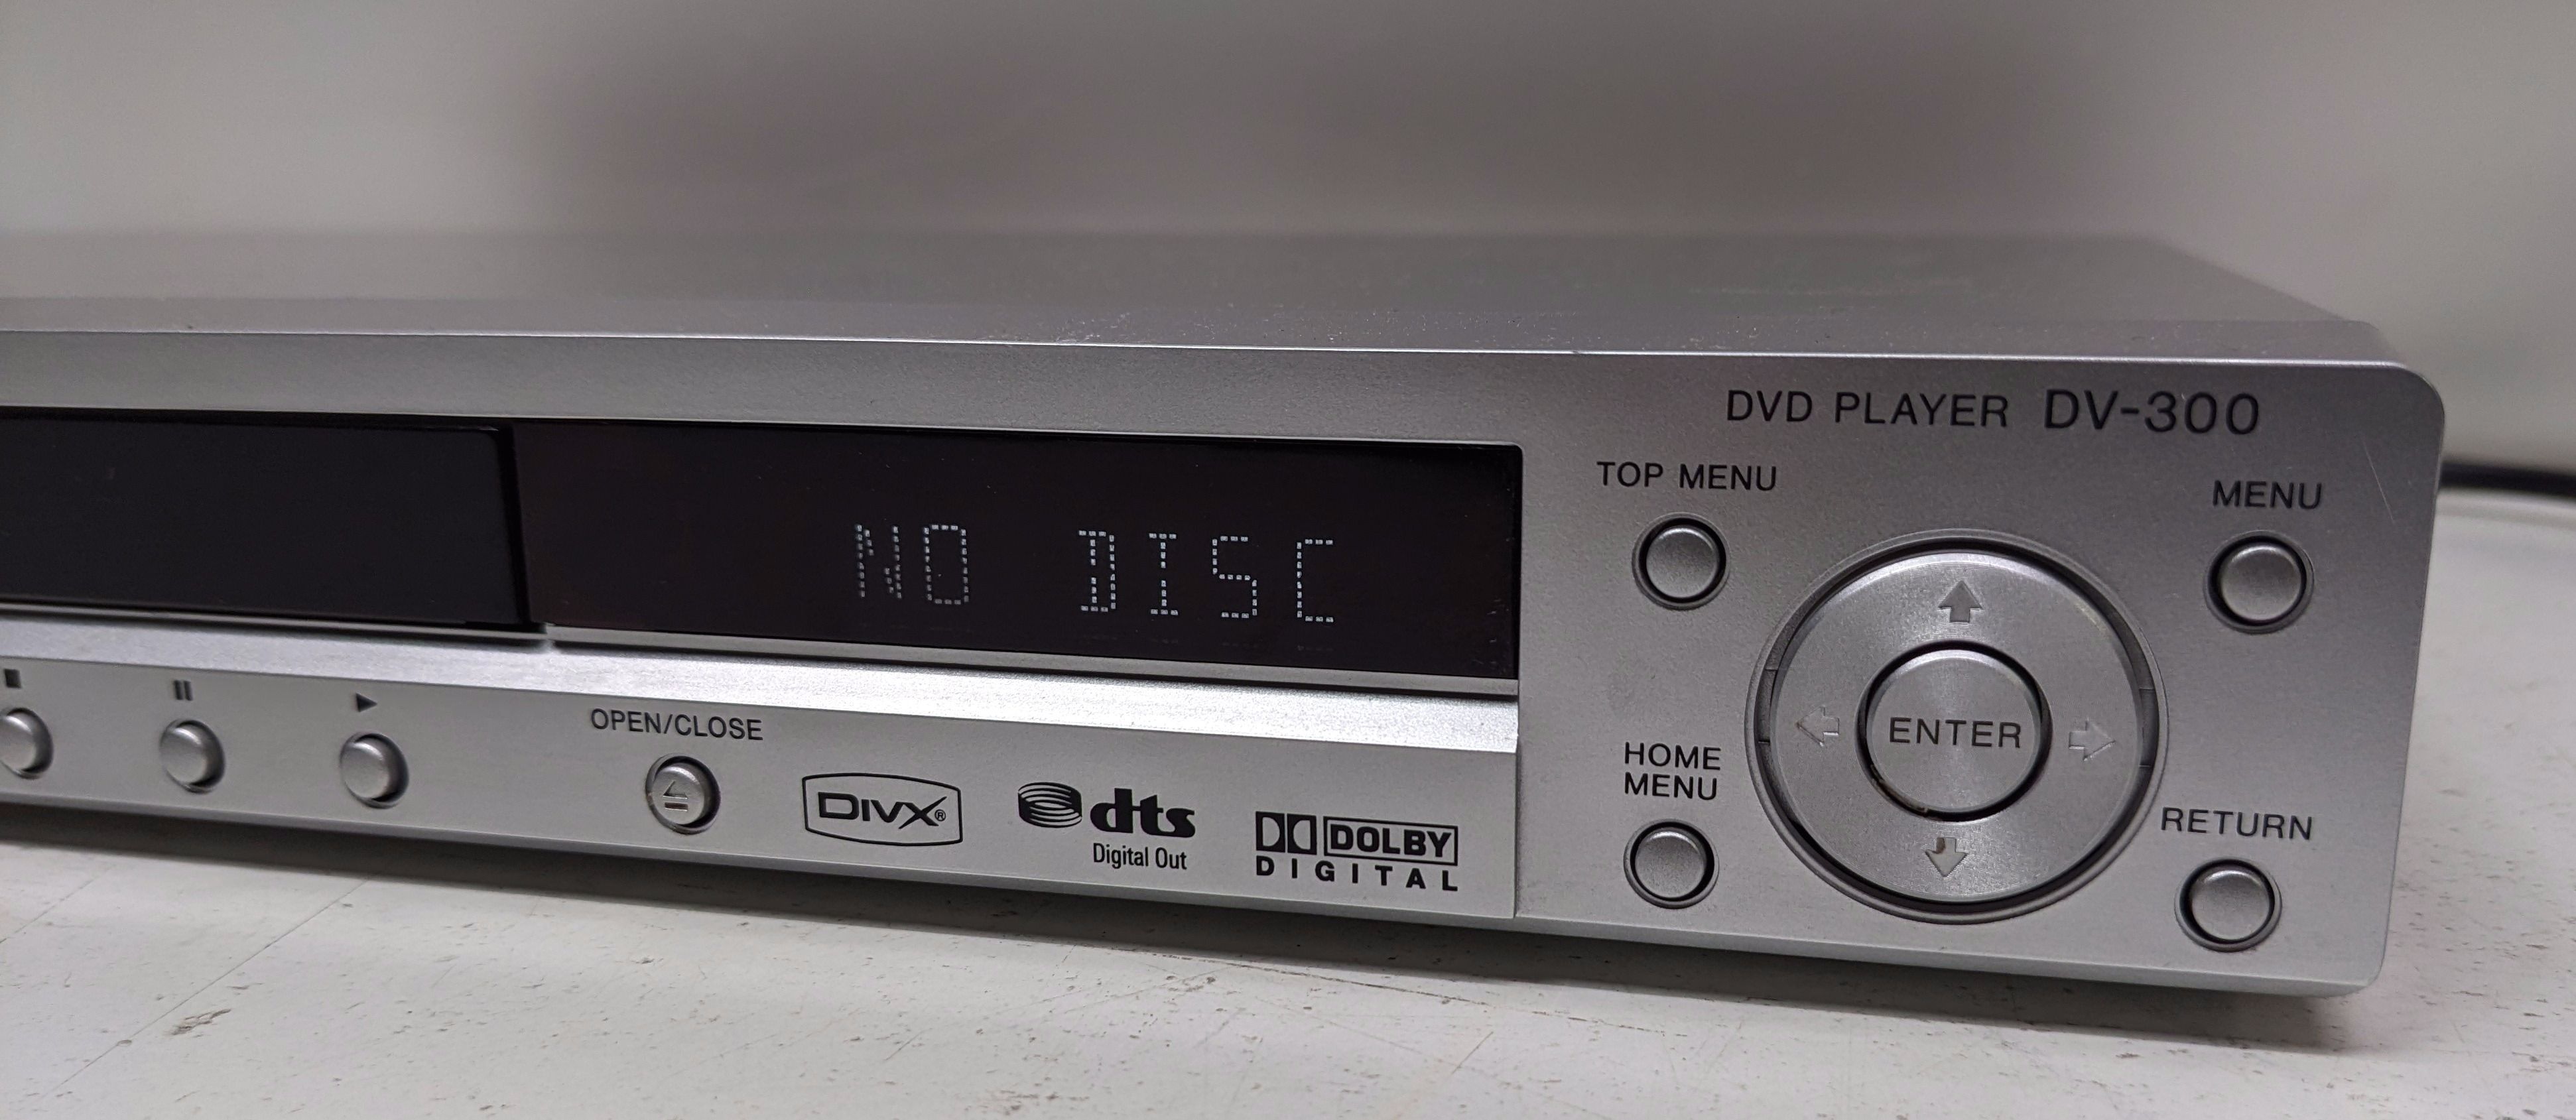 DVD-проигрыватель класса Hi-Fi – DV-300